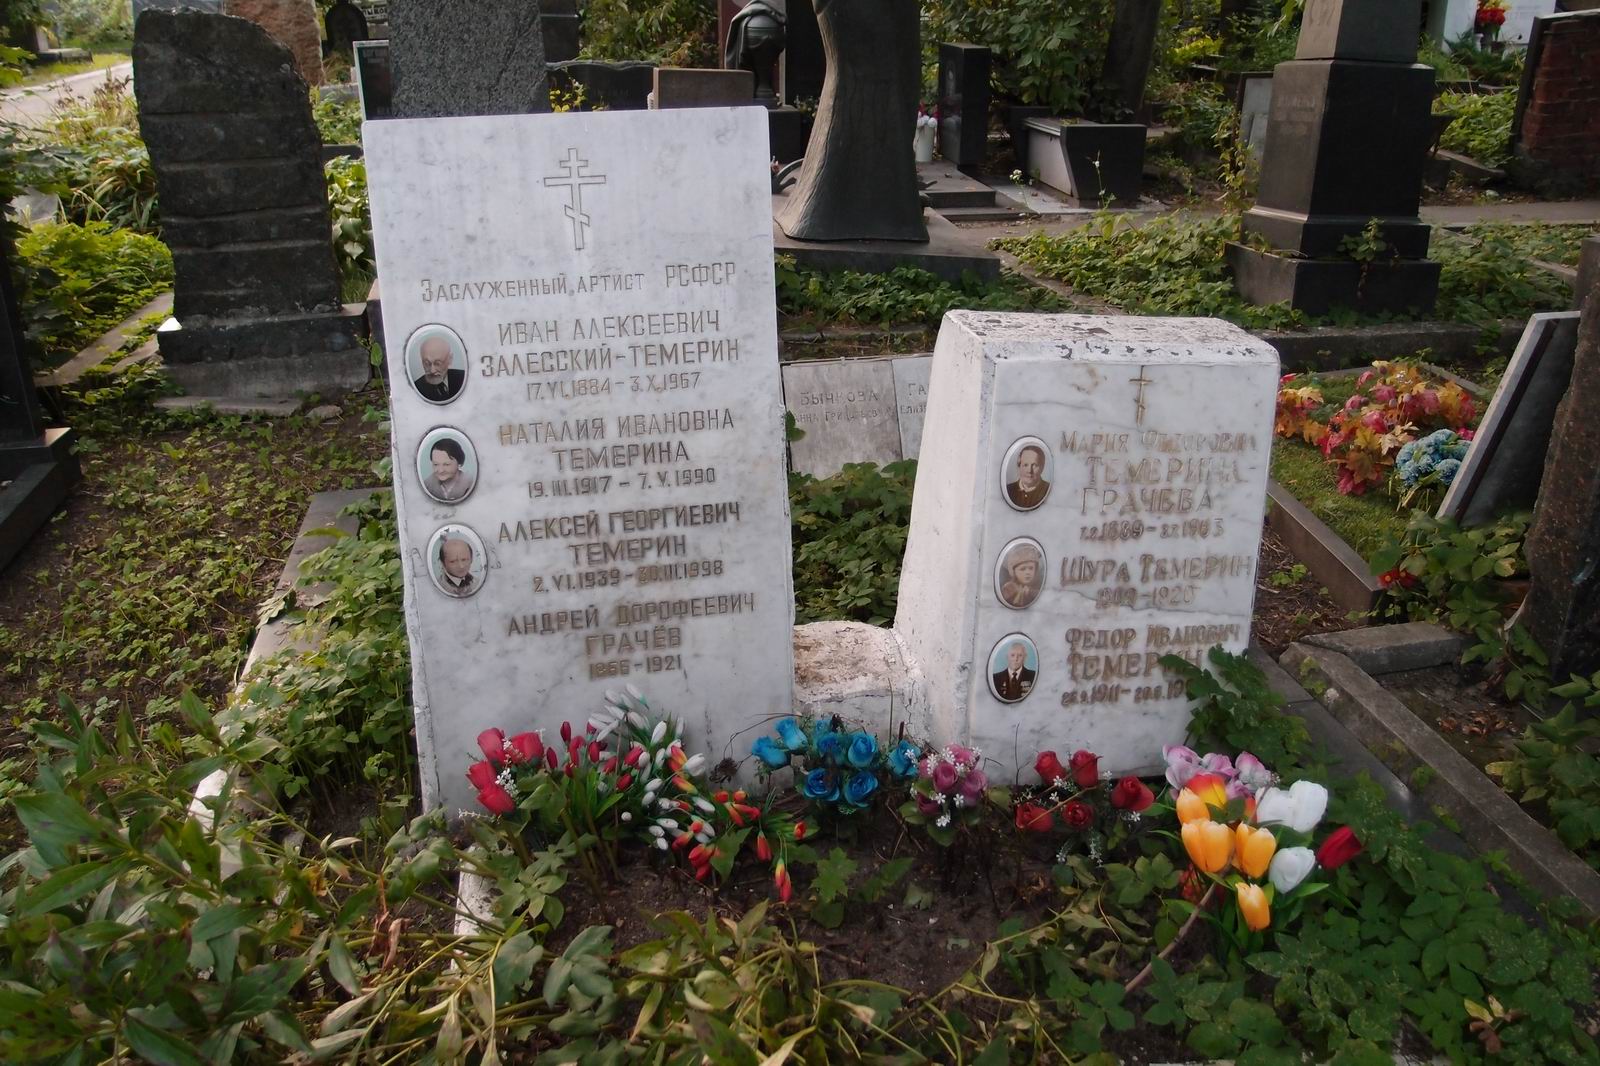 Памятник на могиле Залесского-Темерина И.А. (1884-1967), на Новодевичьем кладбище (1-34-3).